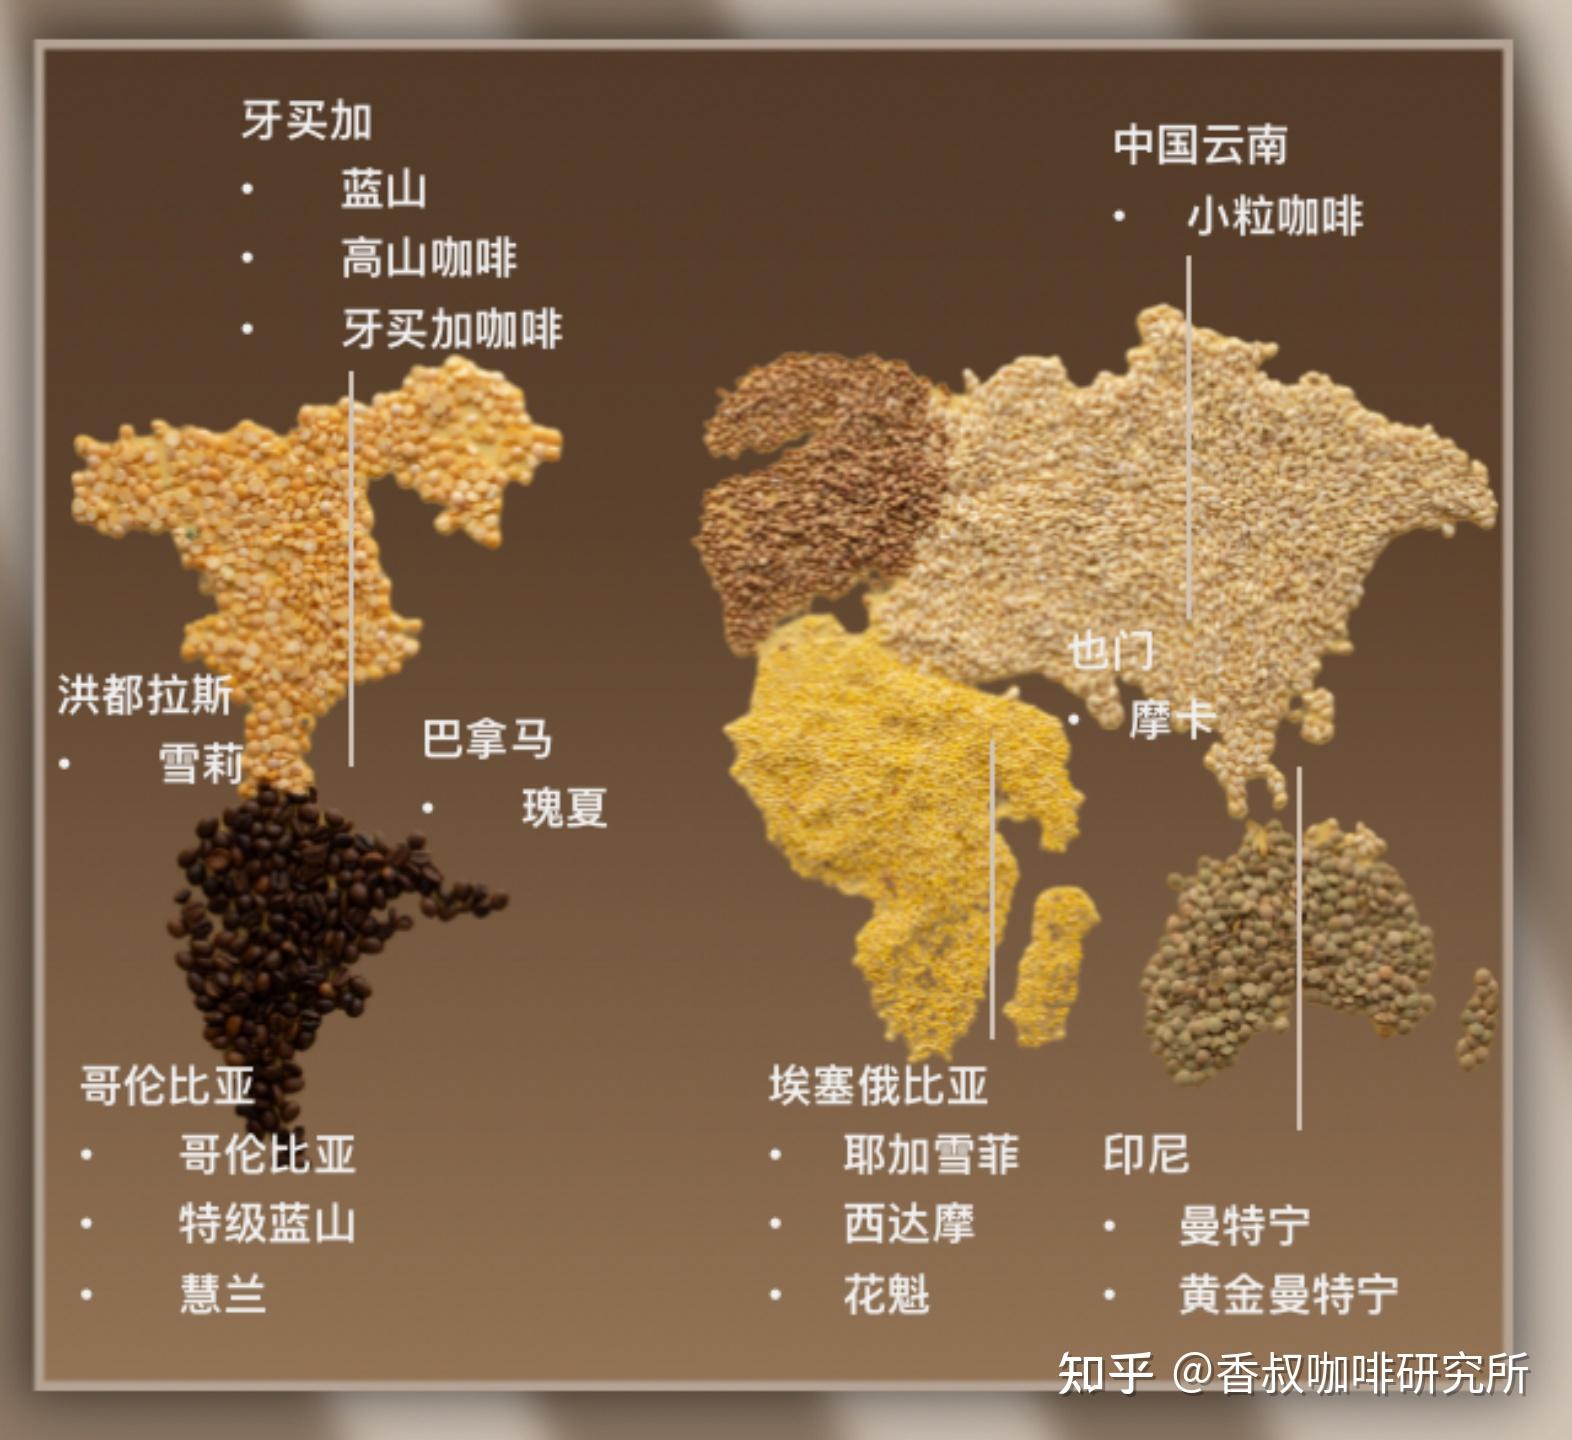 咖啡豆三大产区及风味图片